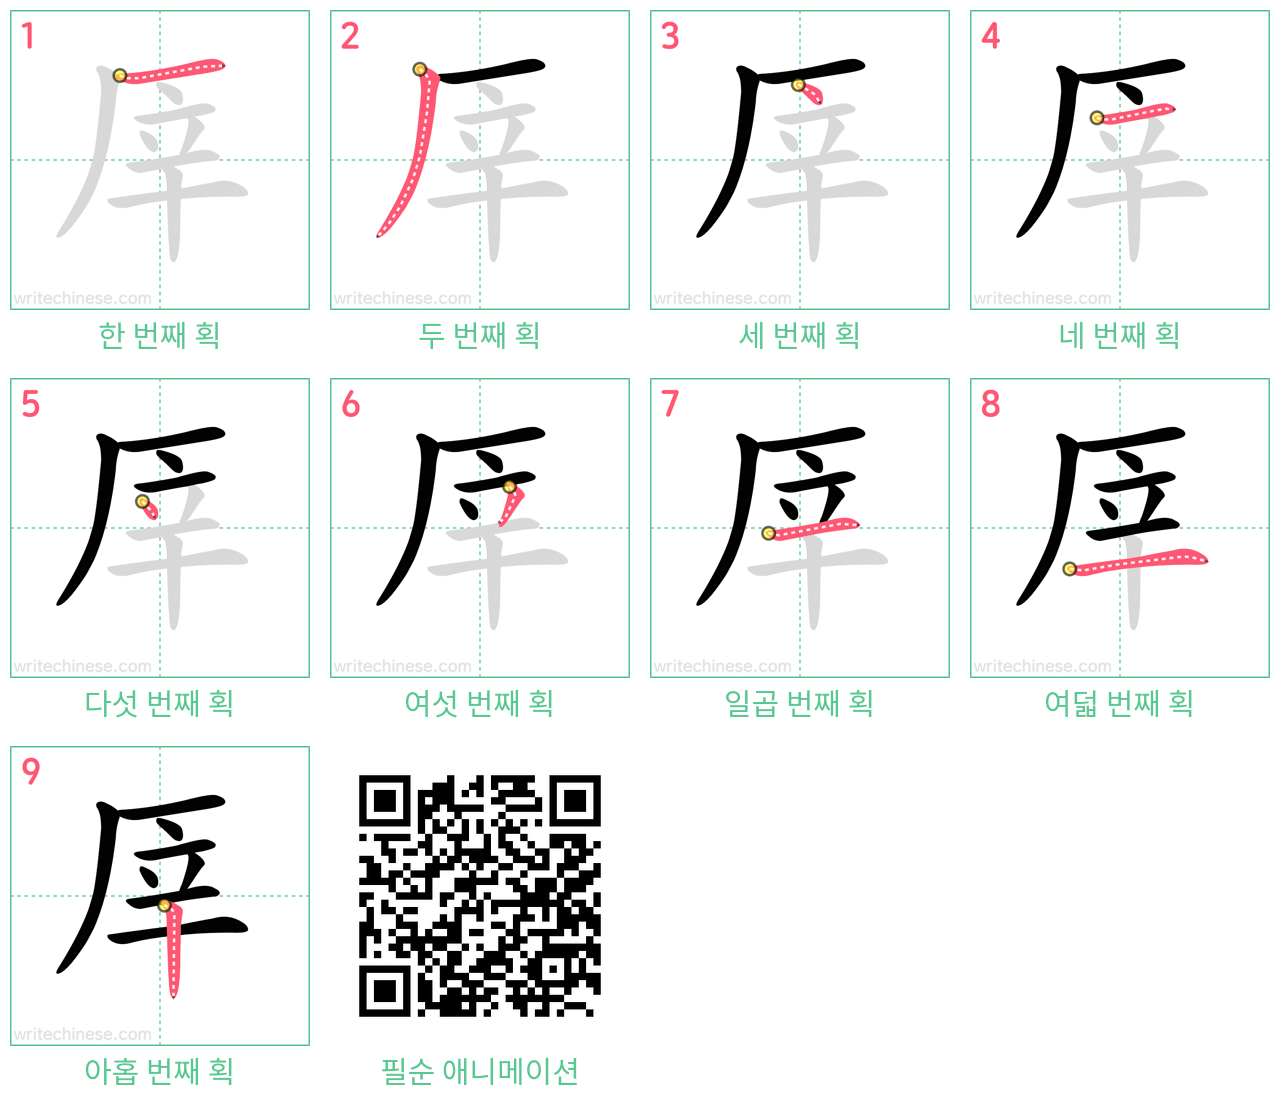 厗 step-by-step stroke order diagrams